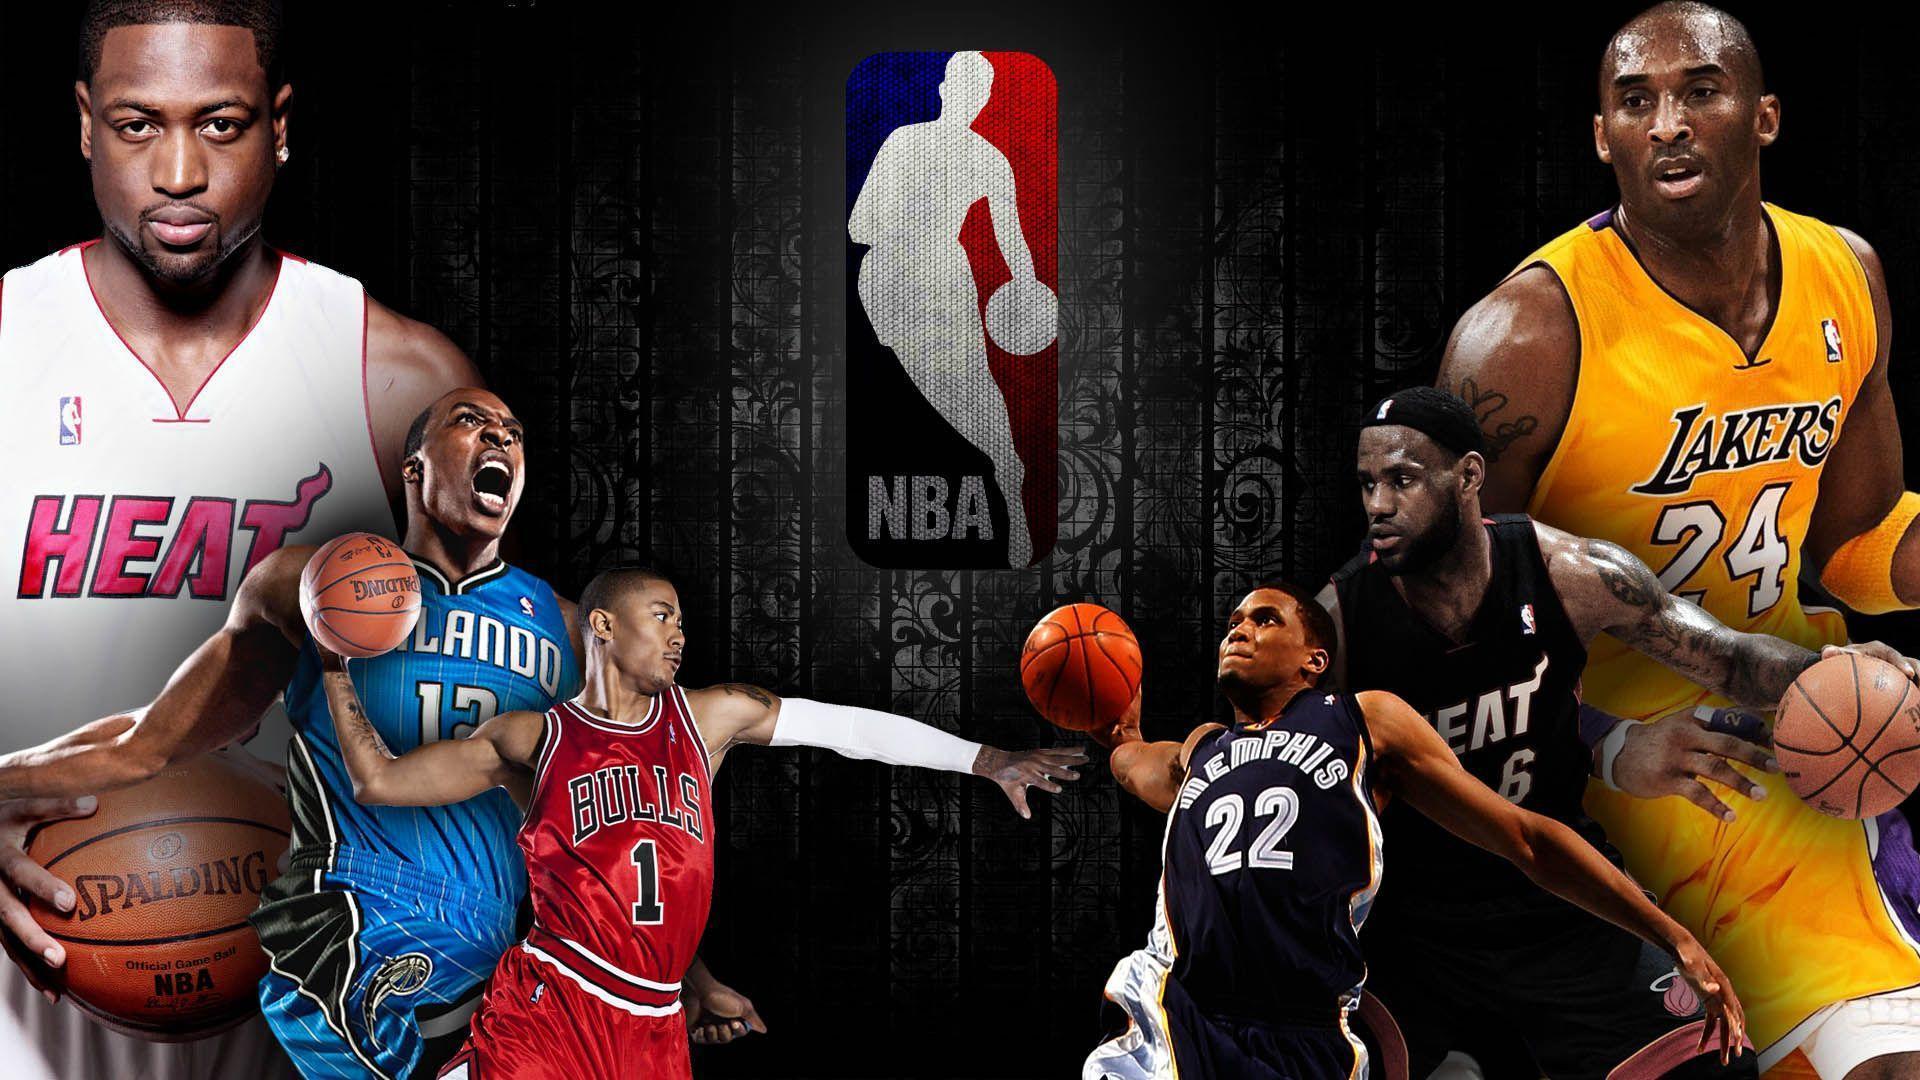 96+] NBA Players Wallpapers - WallpaperSafari